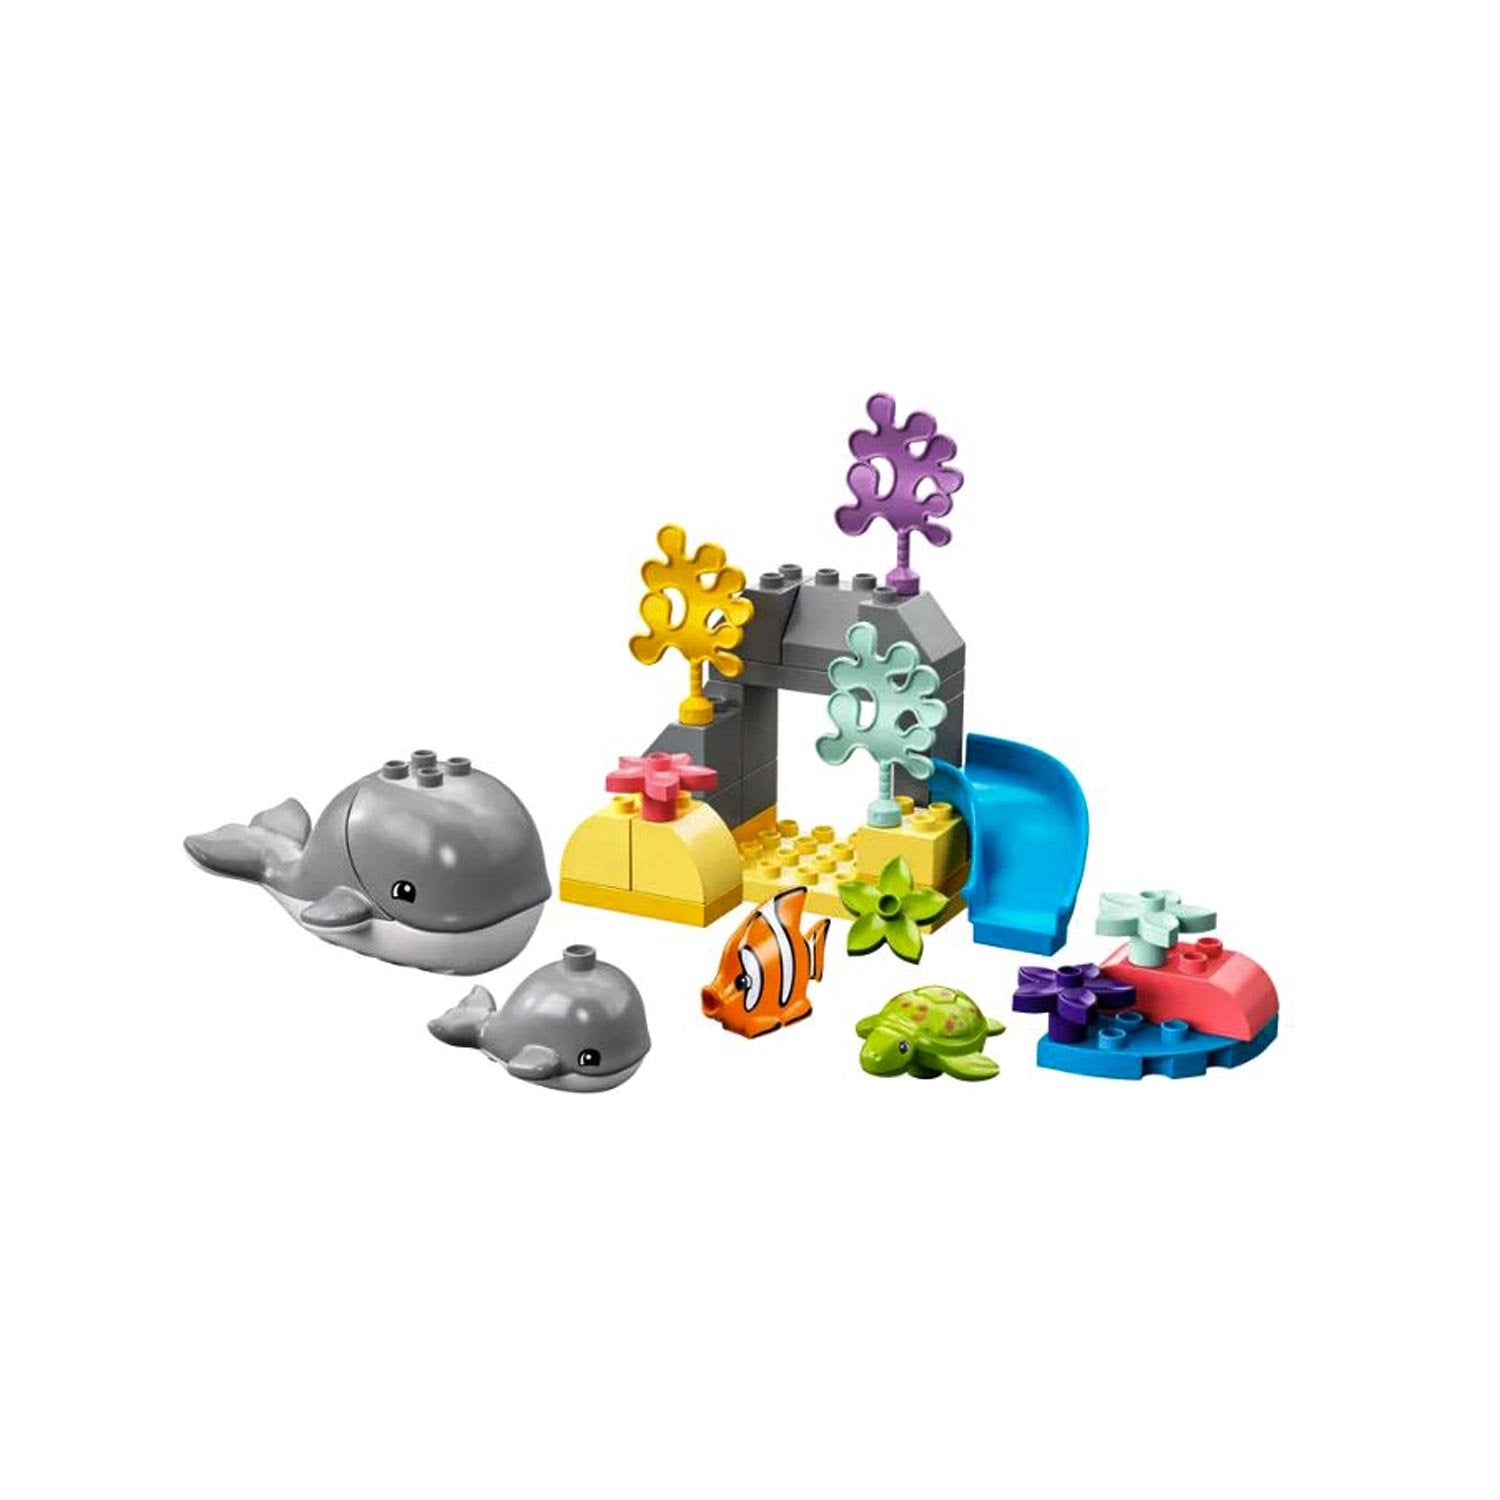 LEGO DUPLO Animals around the world XL set - KinderSpell ®